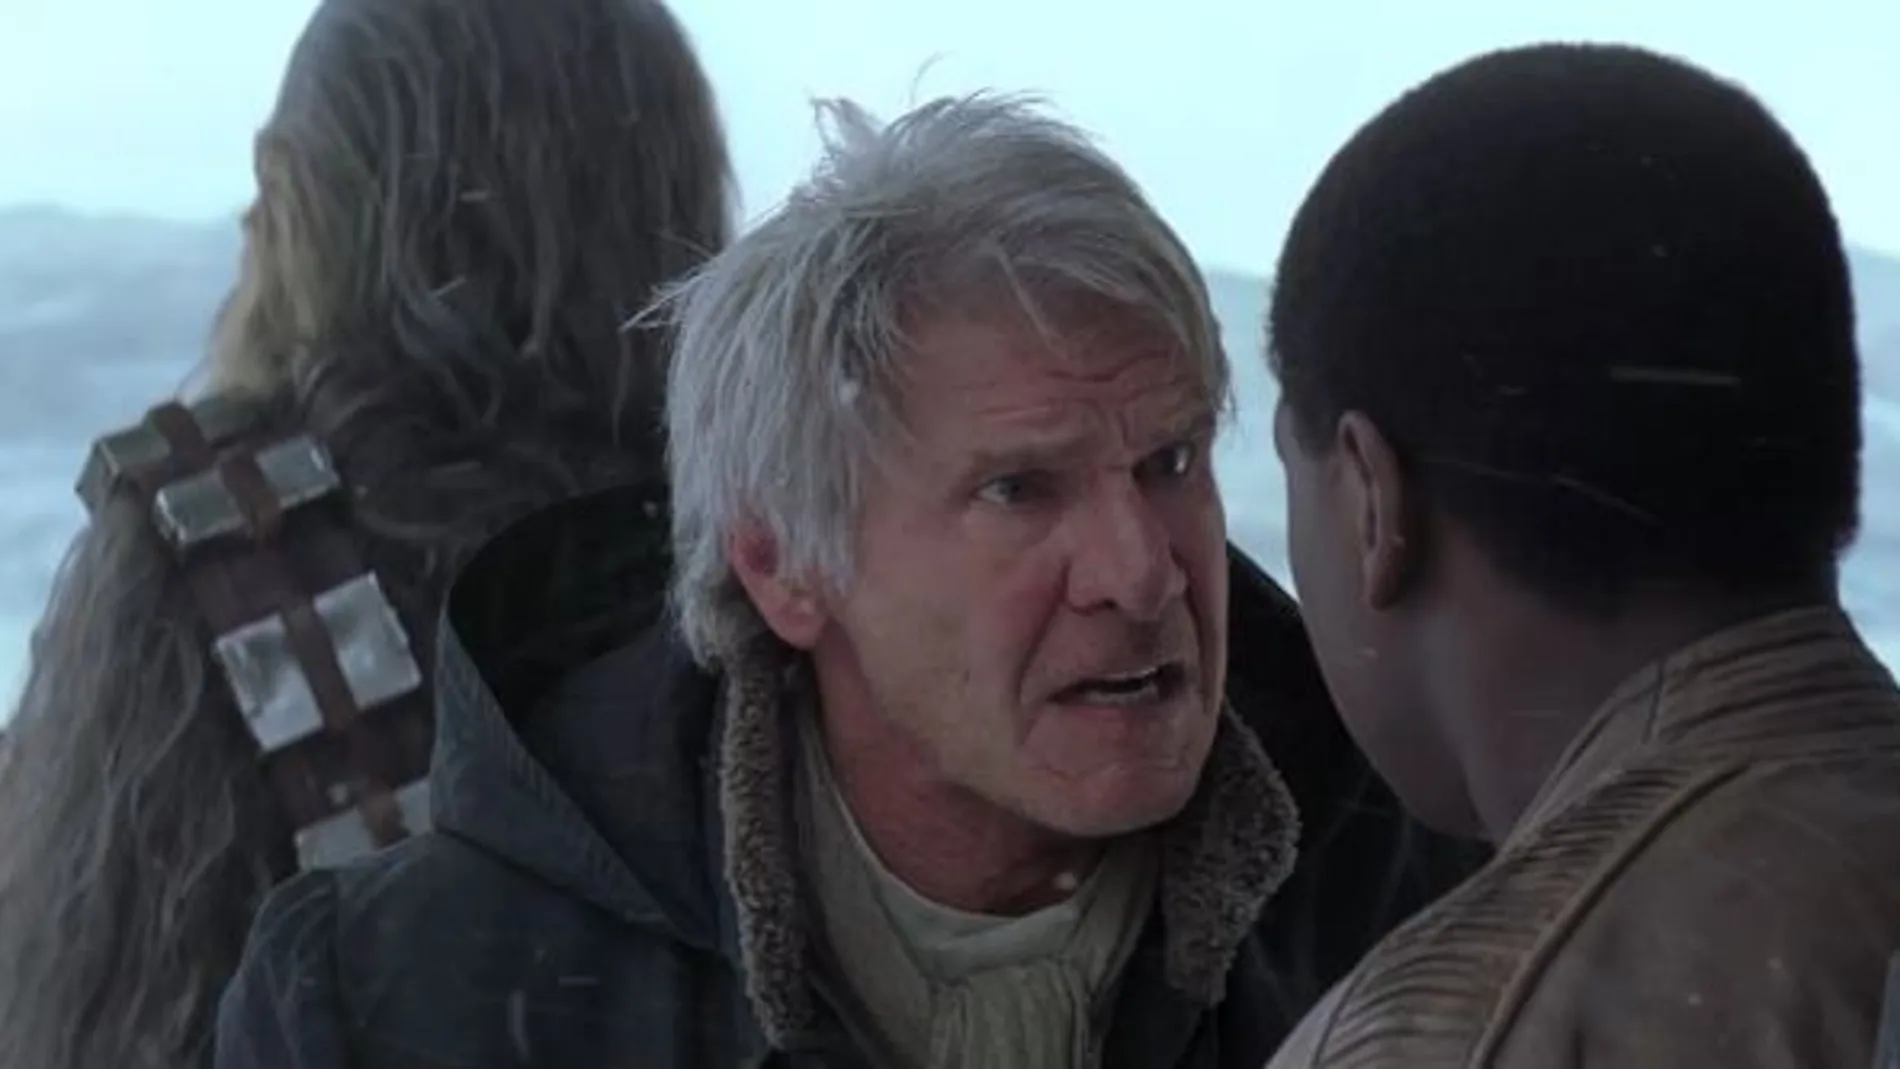 El accidente de Harrison Ford durante el rodaje de Star Wars le costará a la productora 1,7 millones de euros